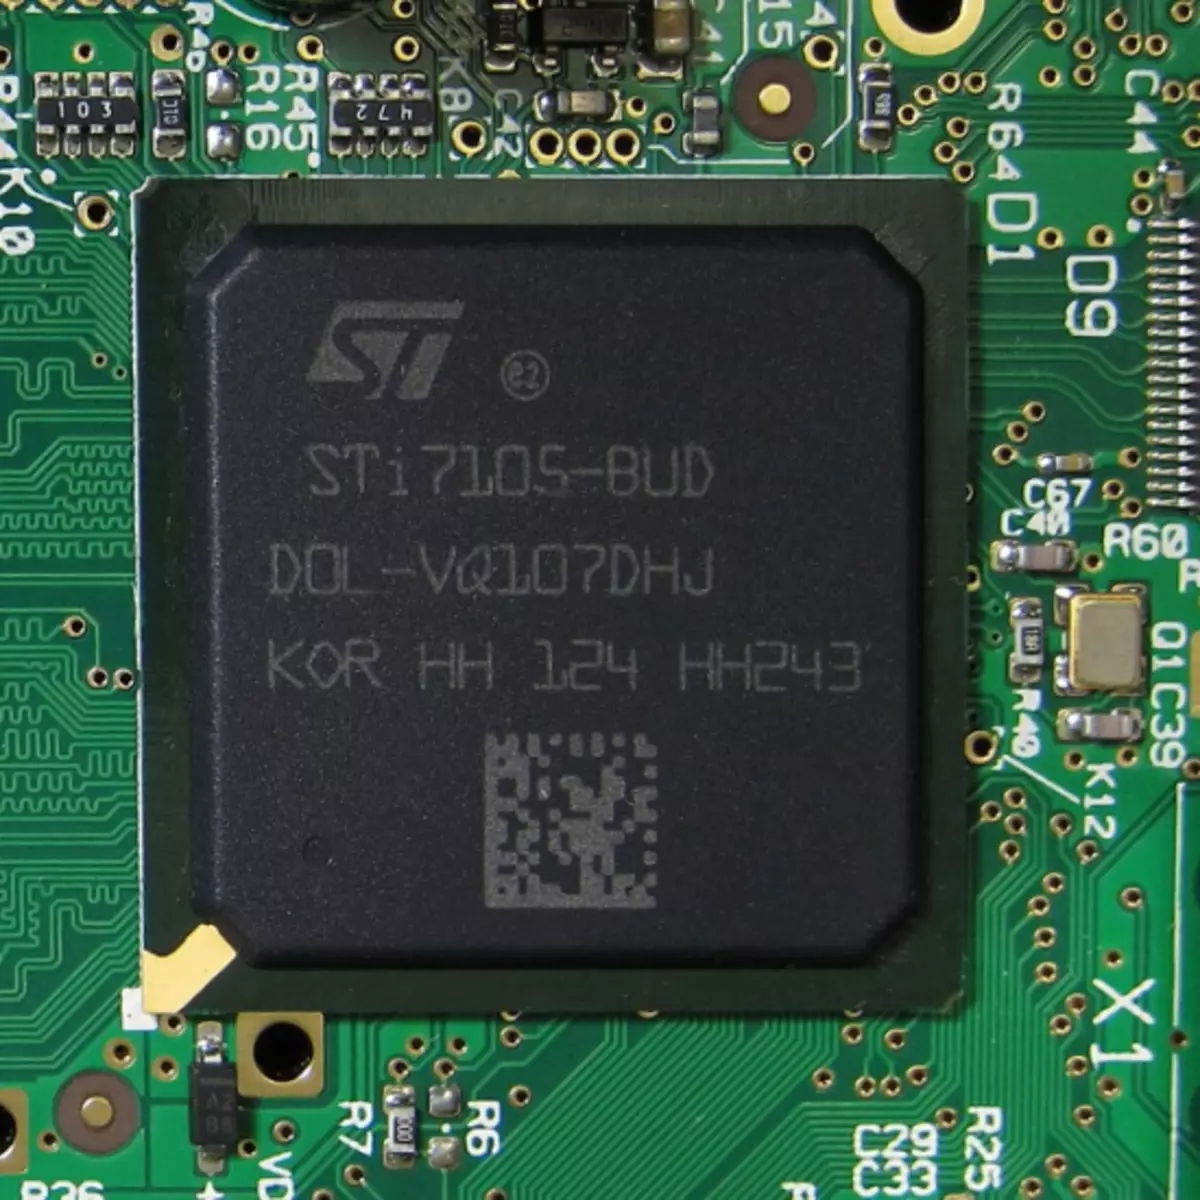 Mag 250 sti7105-bud processor